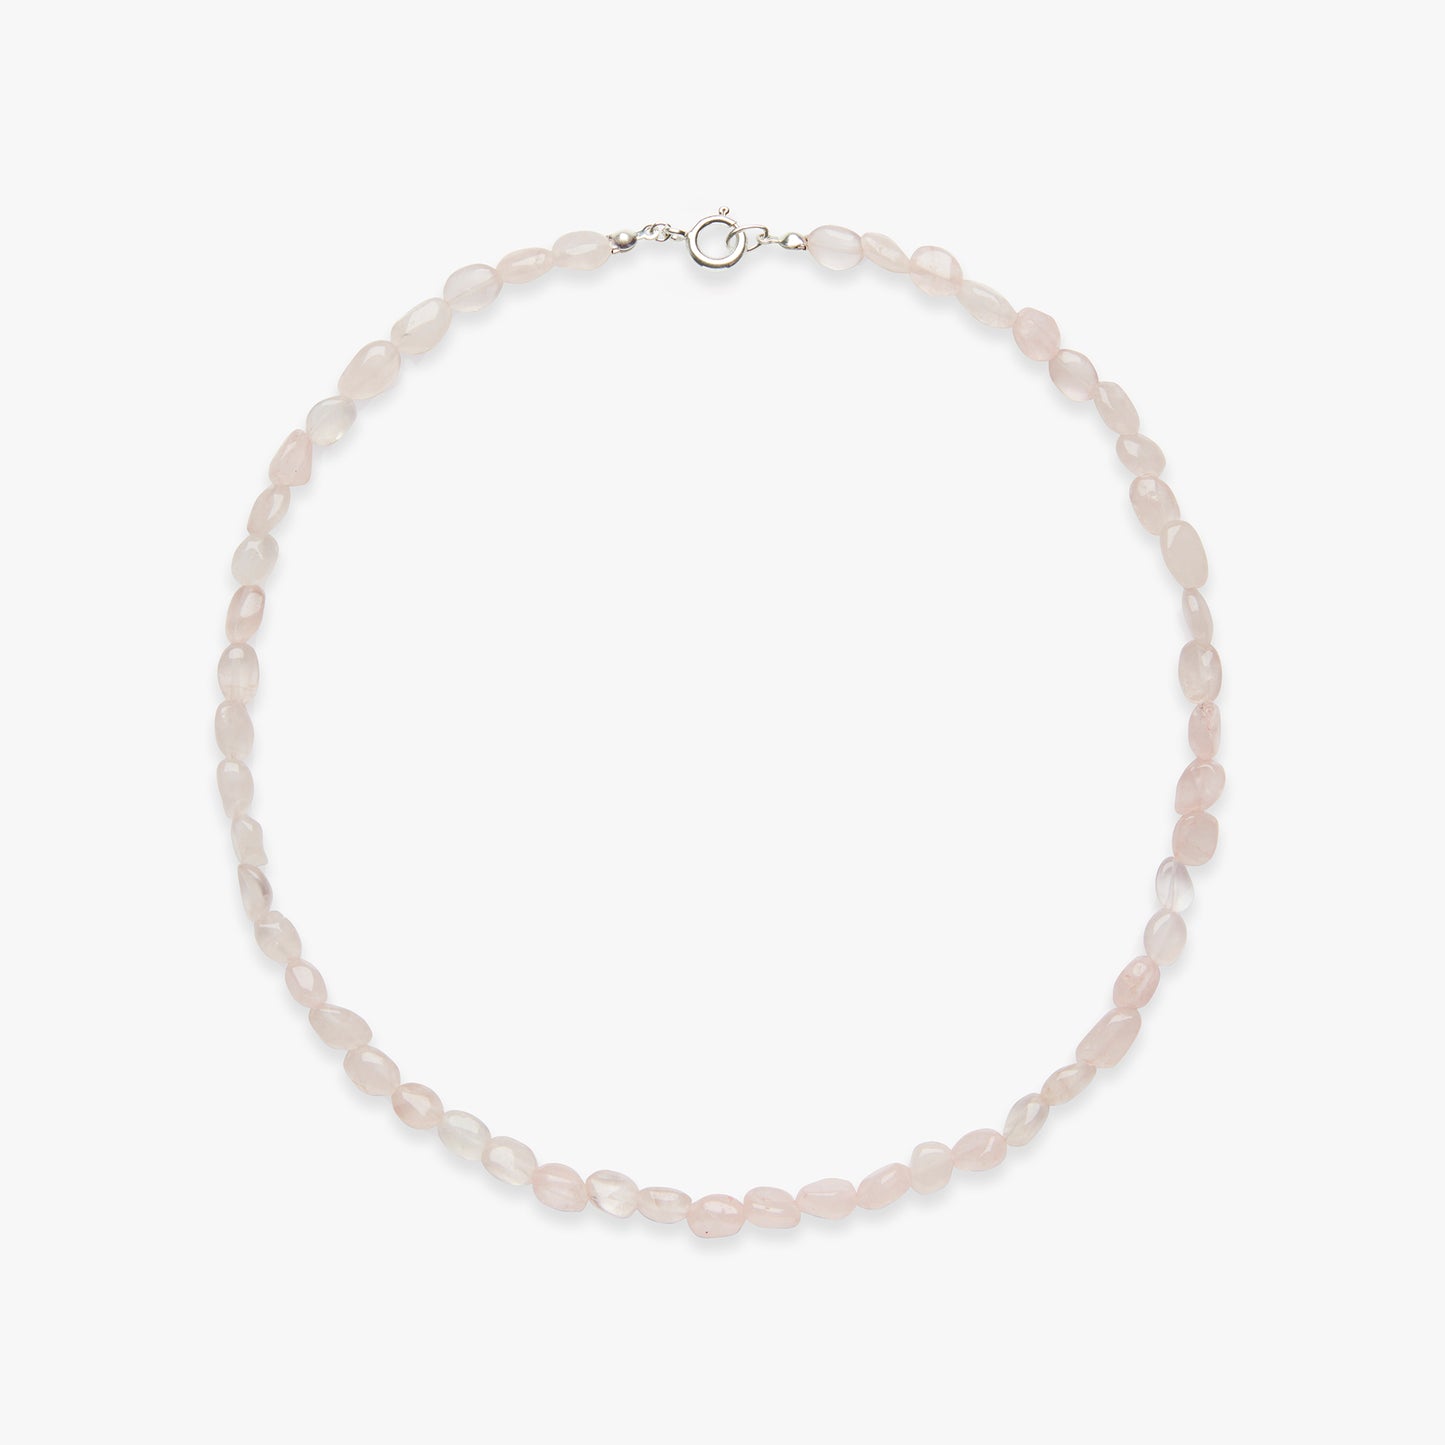 Pixie rose quartz necklace silver